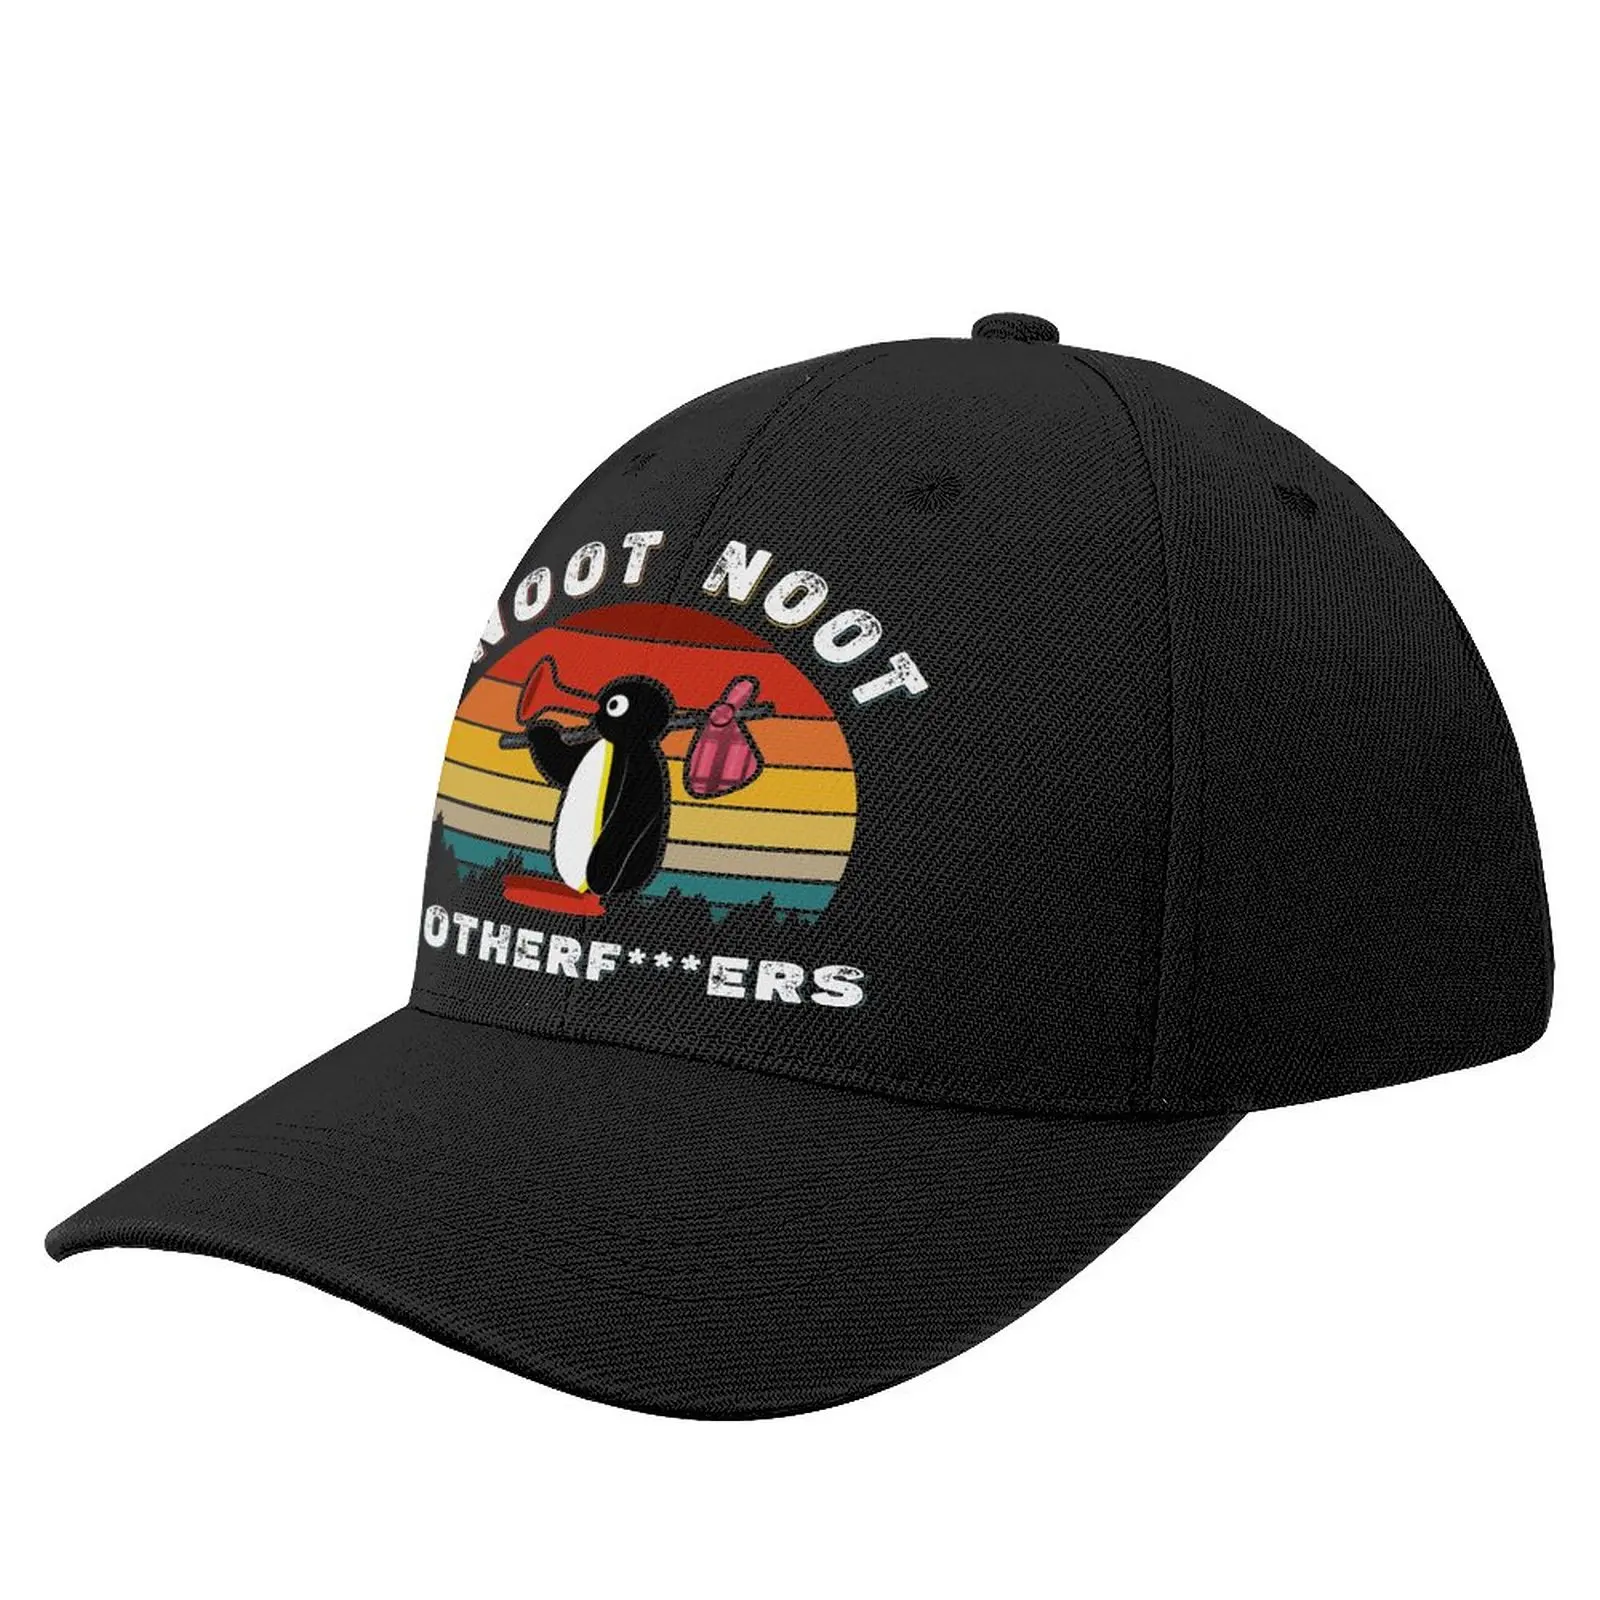 

Noot Pingu Baseball Cap Noot Pingu Meme Funny Sarcastic Cool Trucker Hat Spring Men Rock Print Snapback Cap